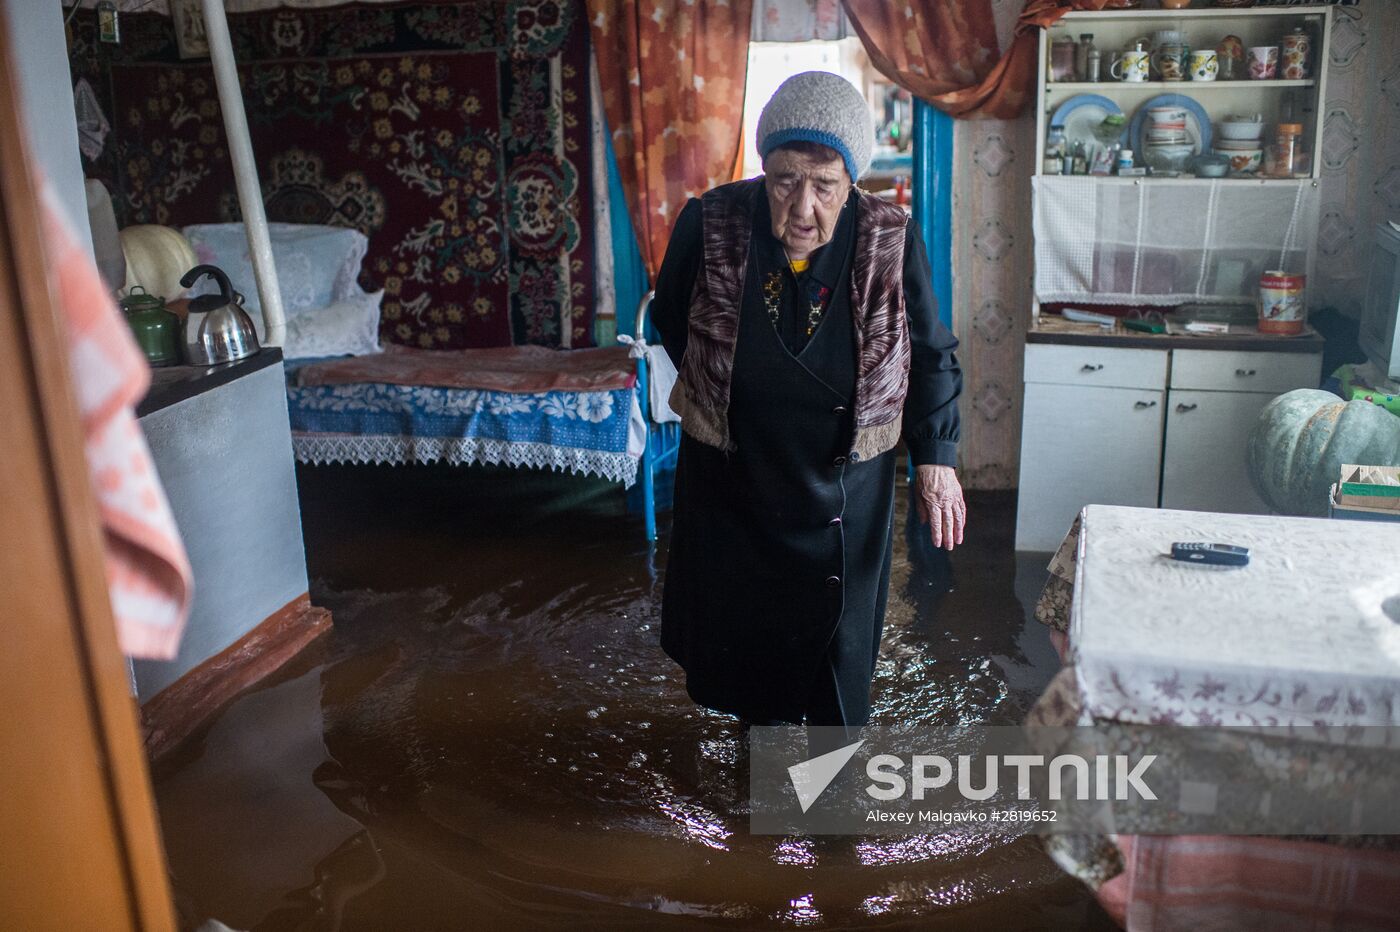 Spring flood in the Omsk Region